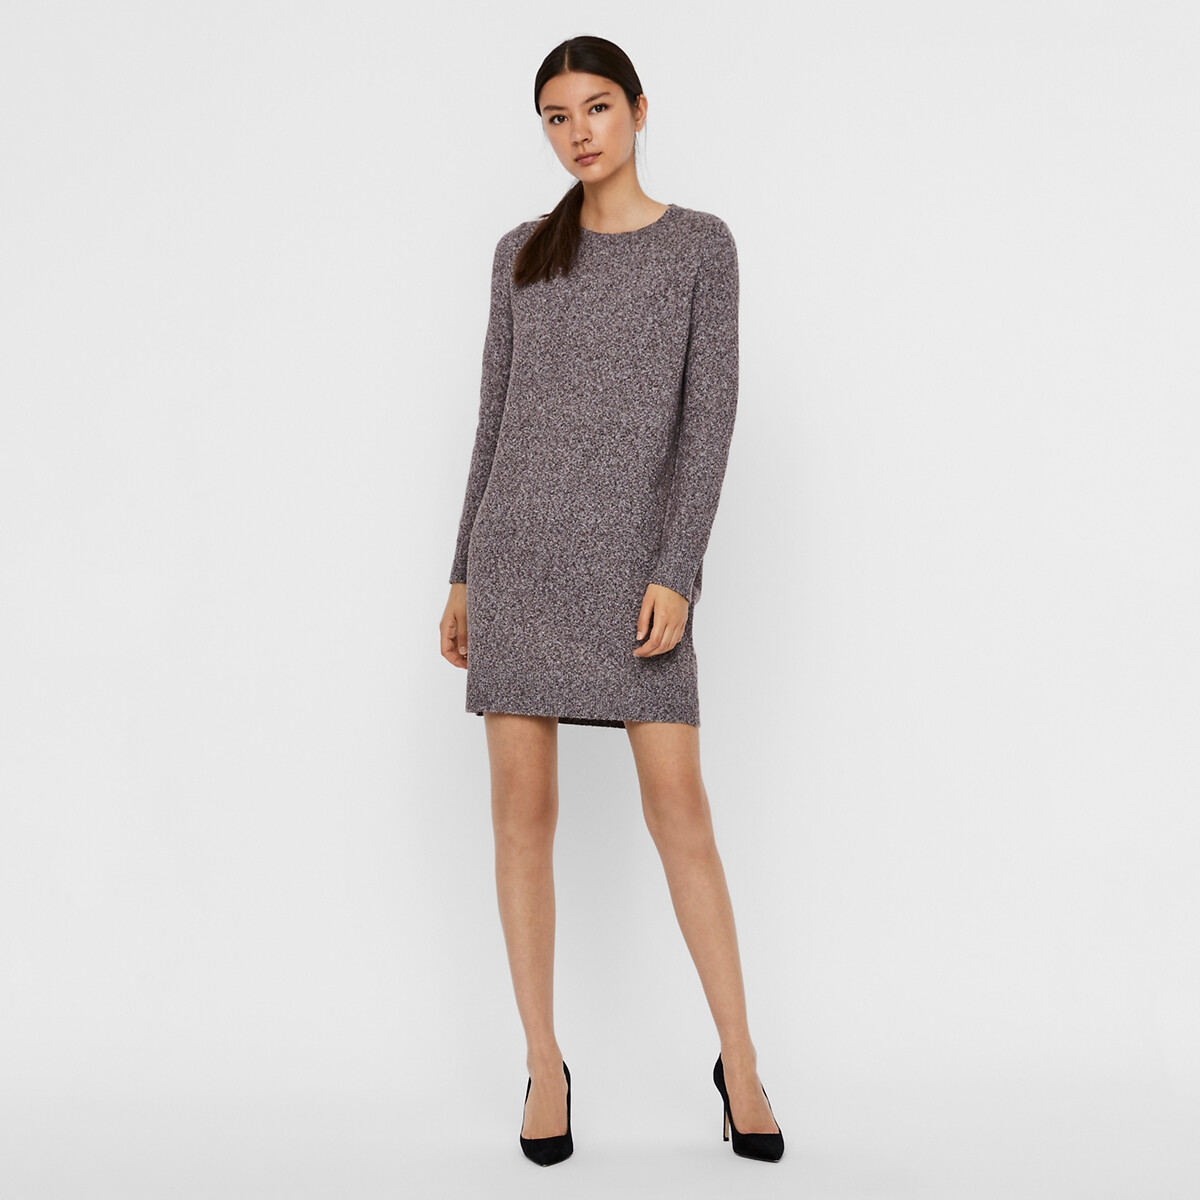 Платье-пуловер La Redoute Короткое круглый вырез прямой покрой M каштановый, размер M - фото 2